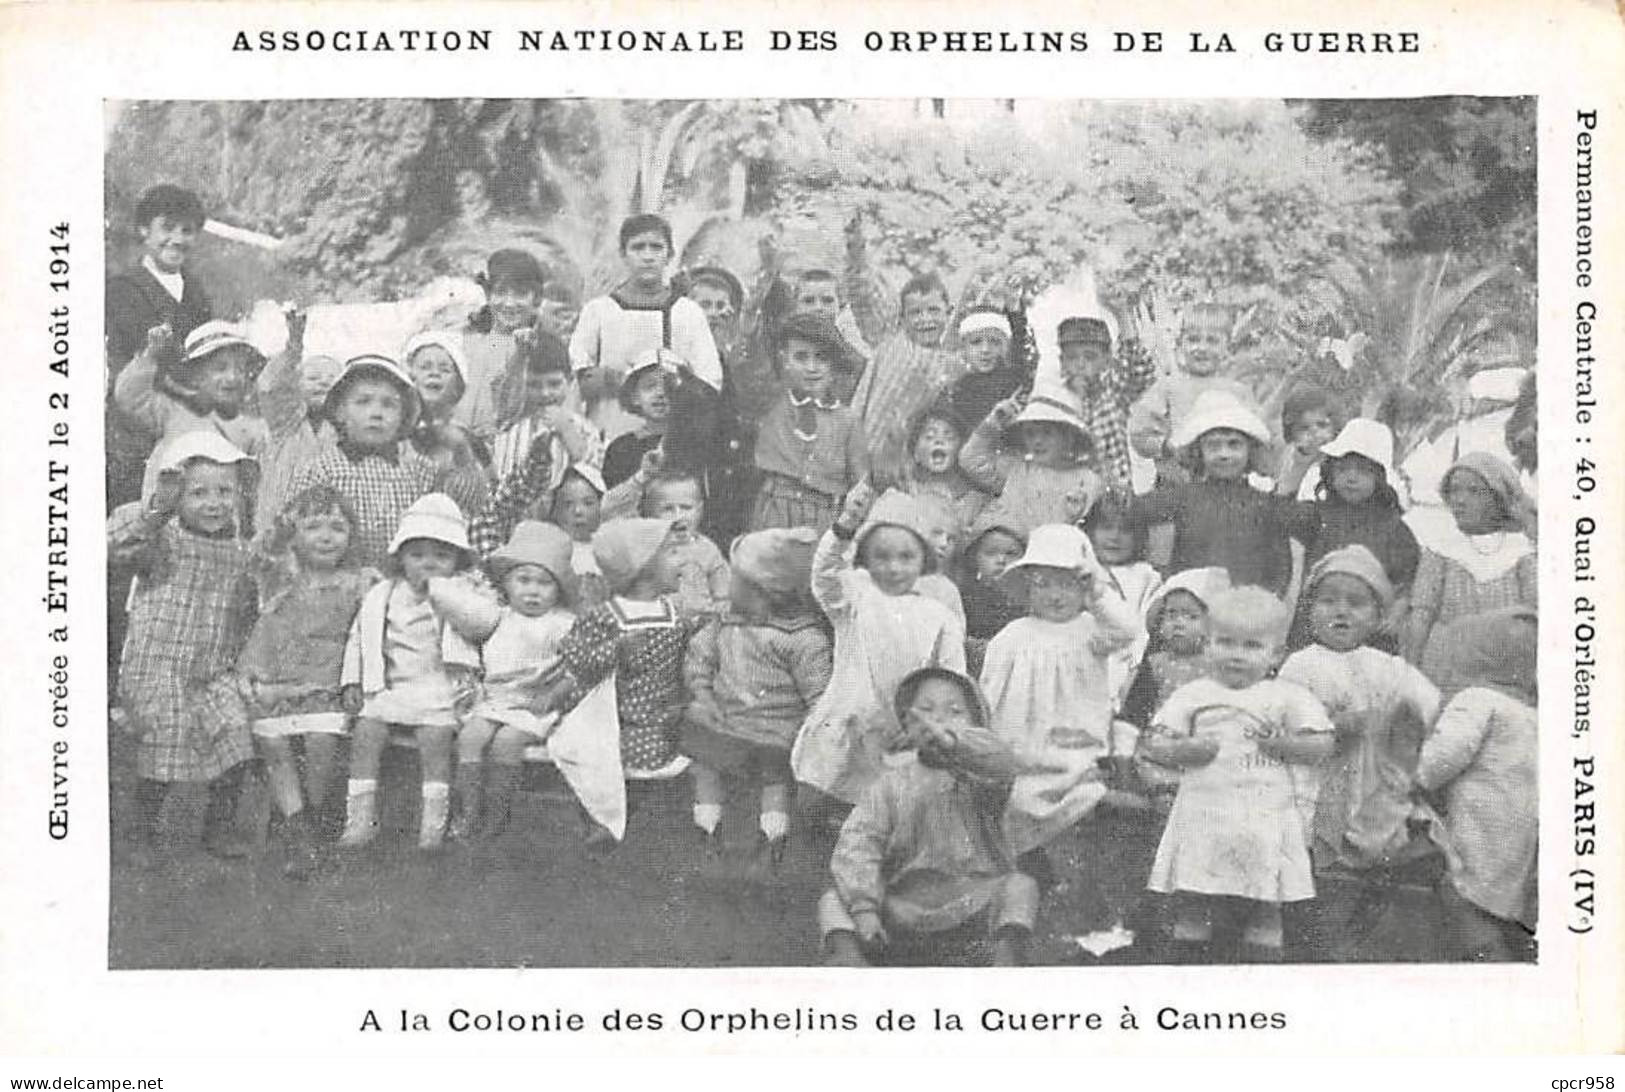 06 - CANNES - SAN43131 - Association Nationale Des Orphelins De La Guerre - A La Colonie Des Orphelins - Cannes